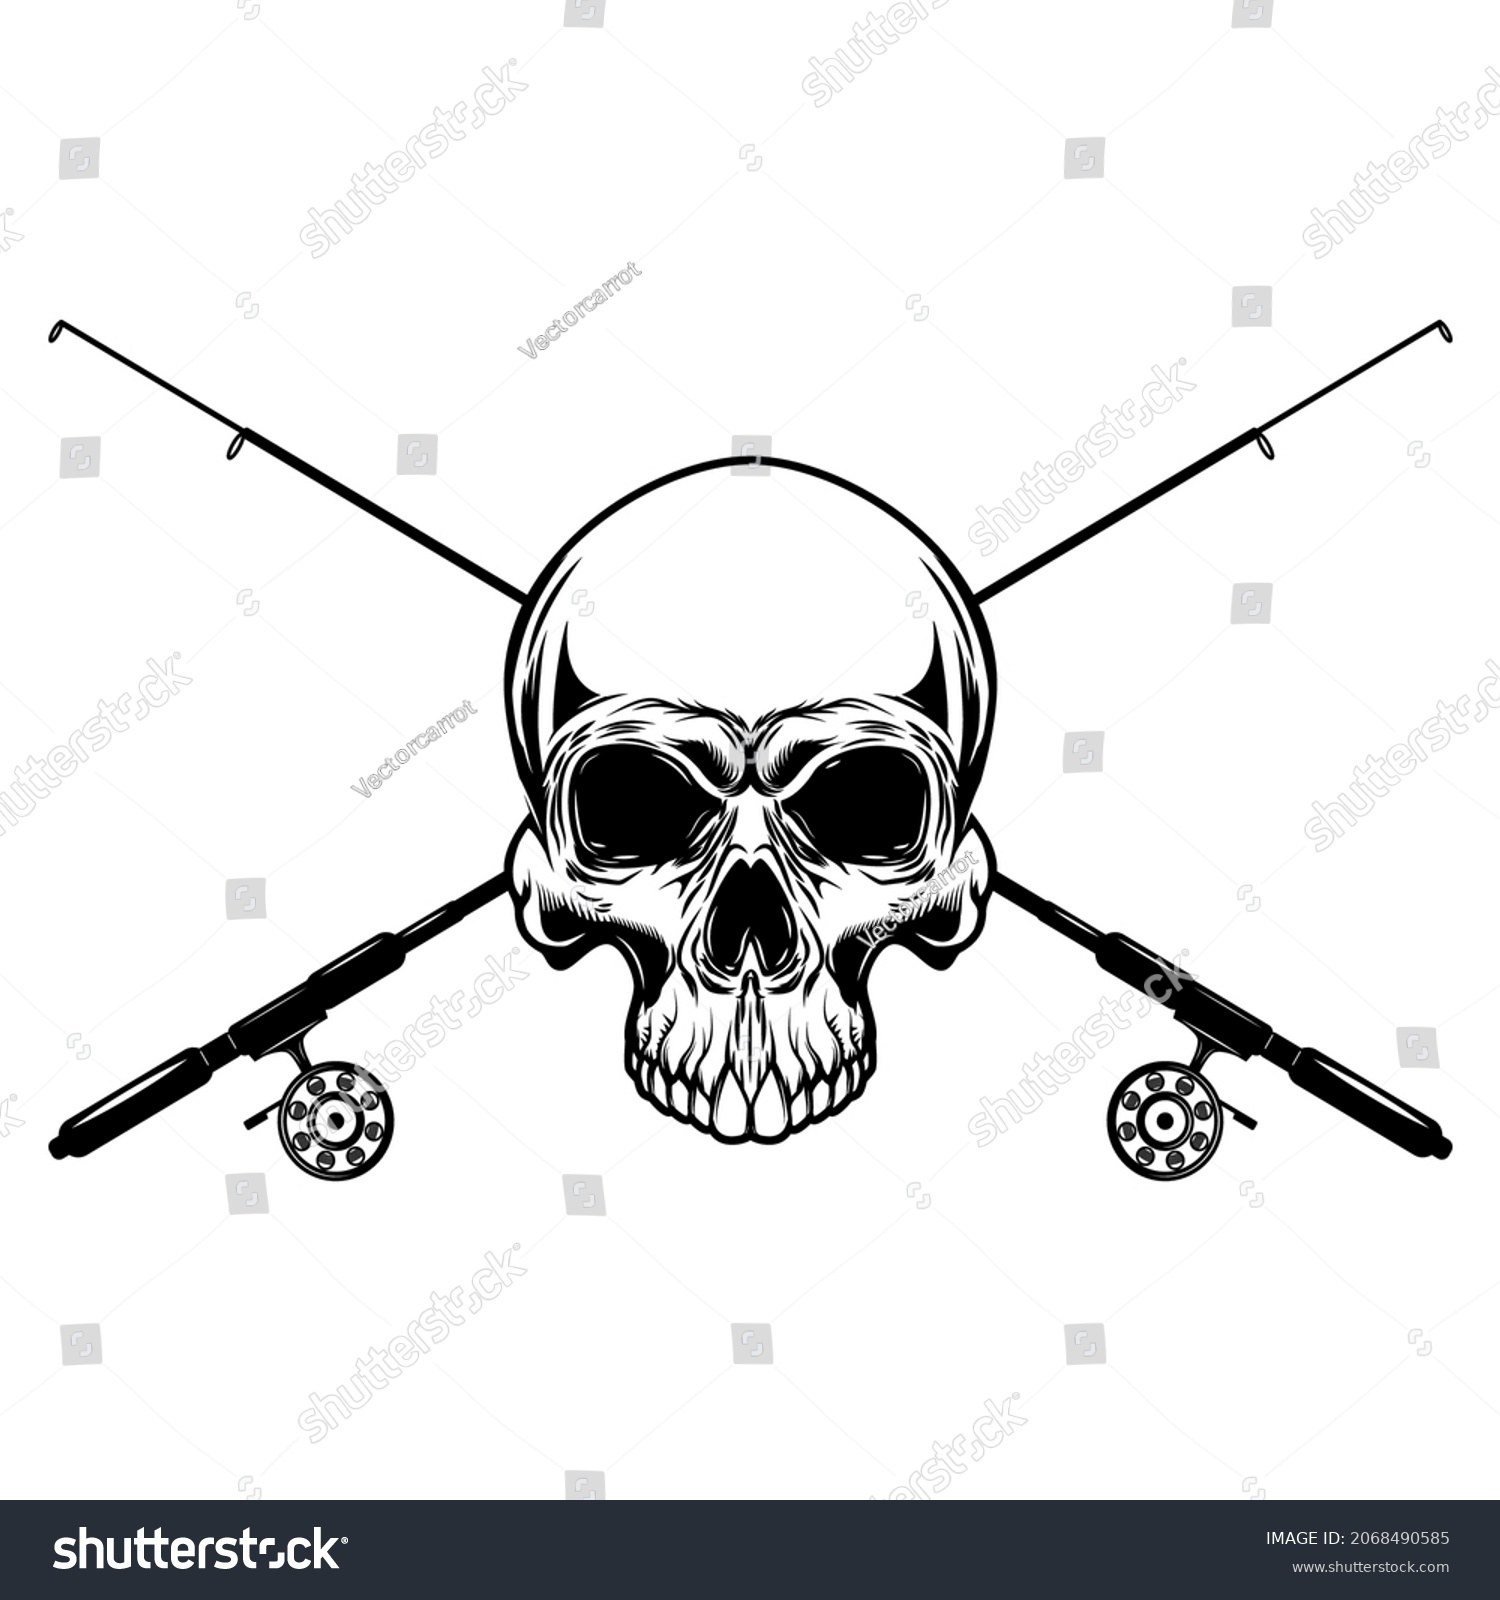 SVG of Fisherman skull with crossed fishing rods. Design element for logo, emblem, sign, poster, t shirt. Vector illustration svg